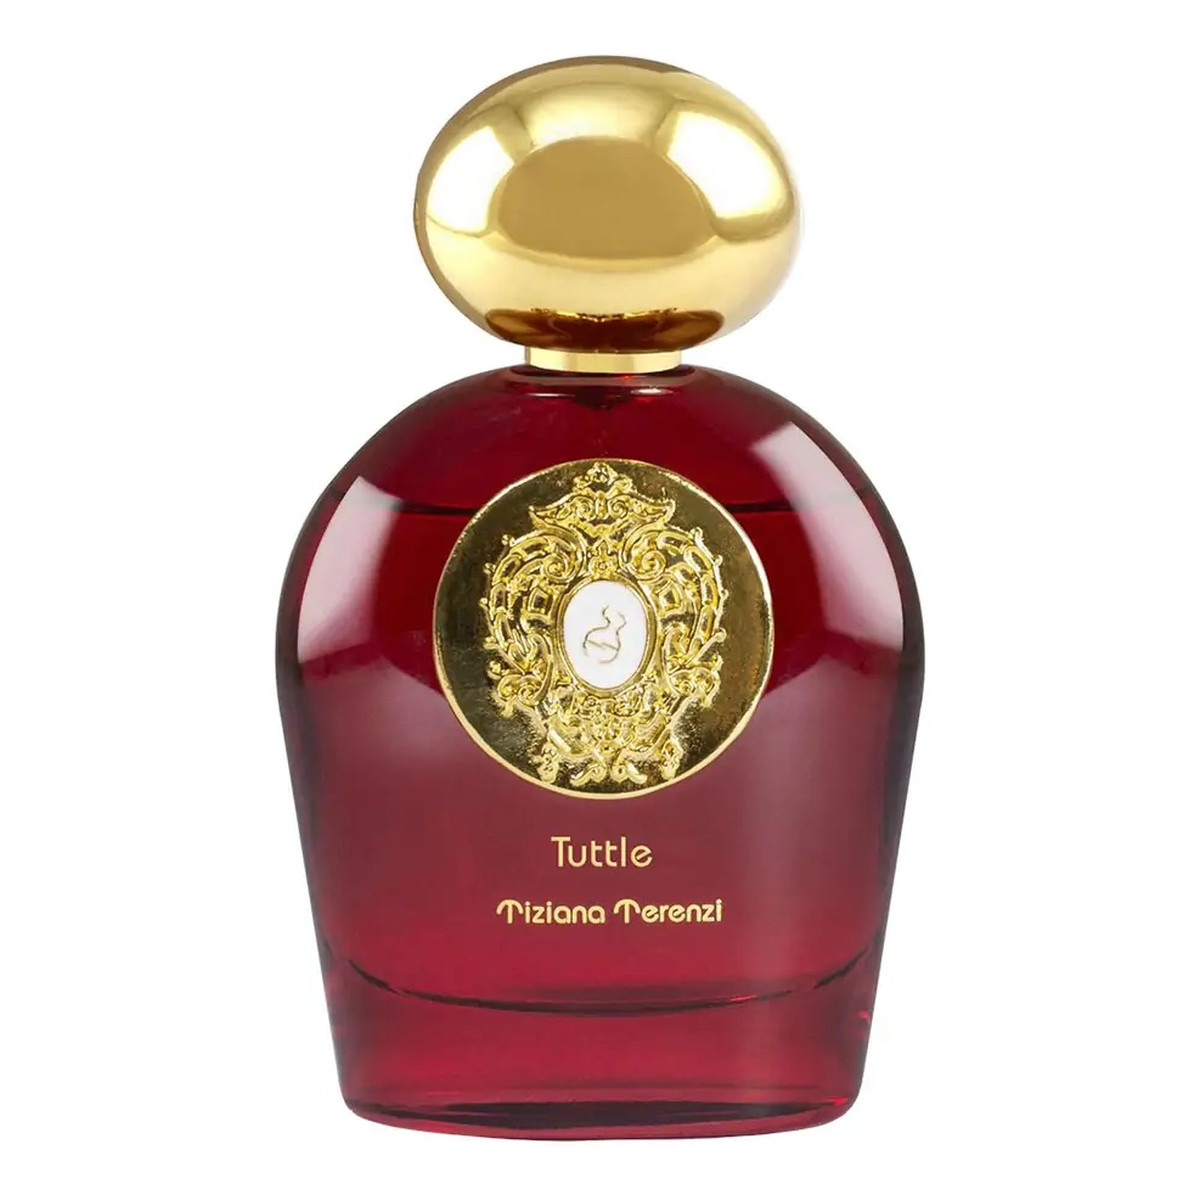 Tiziana Terenzi Tuttle ekstrakt perfum spray 100ml